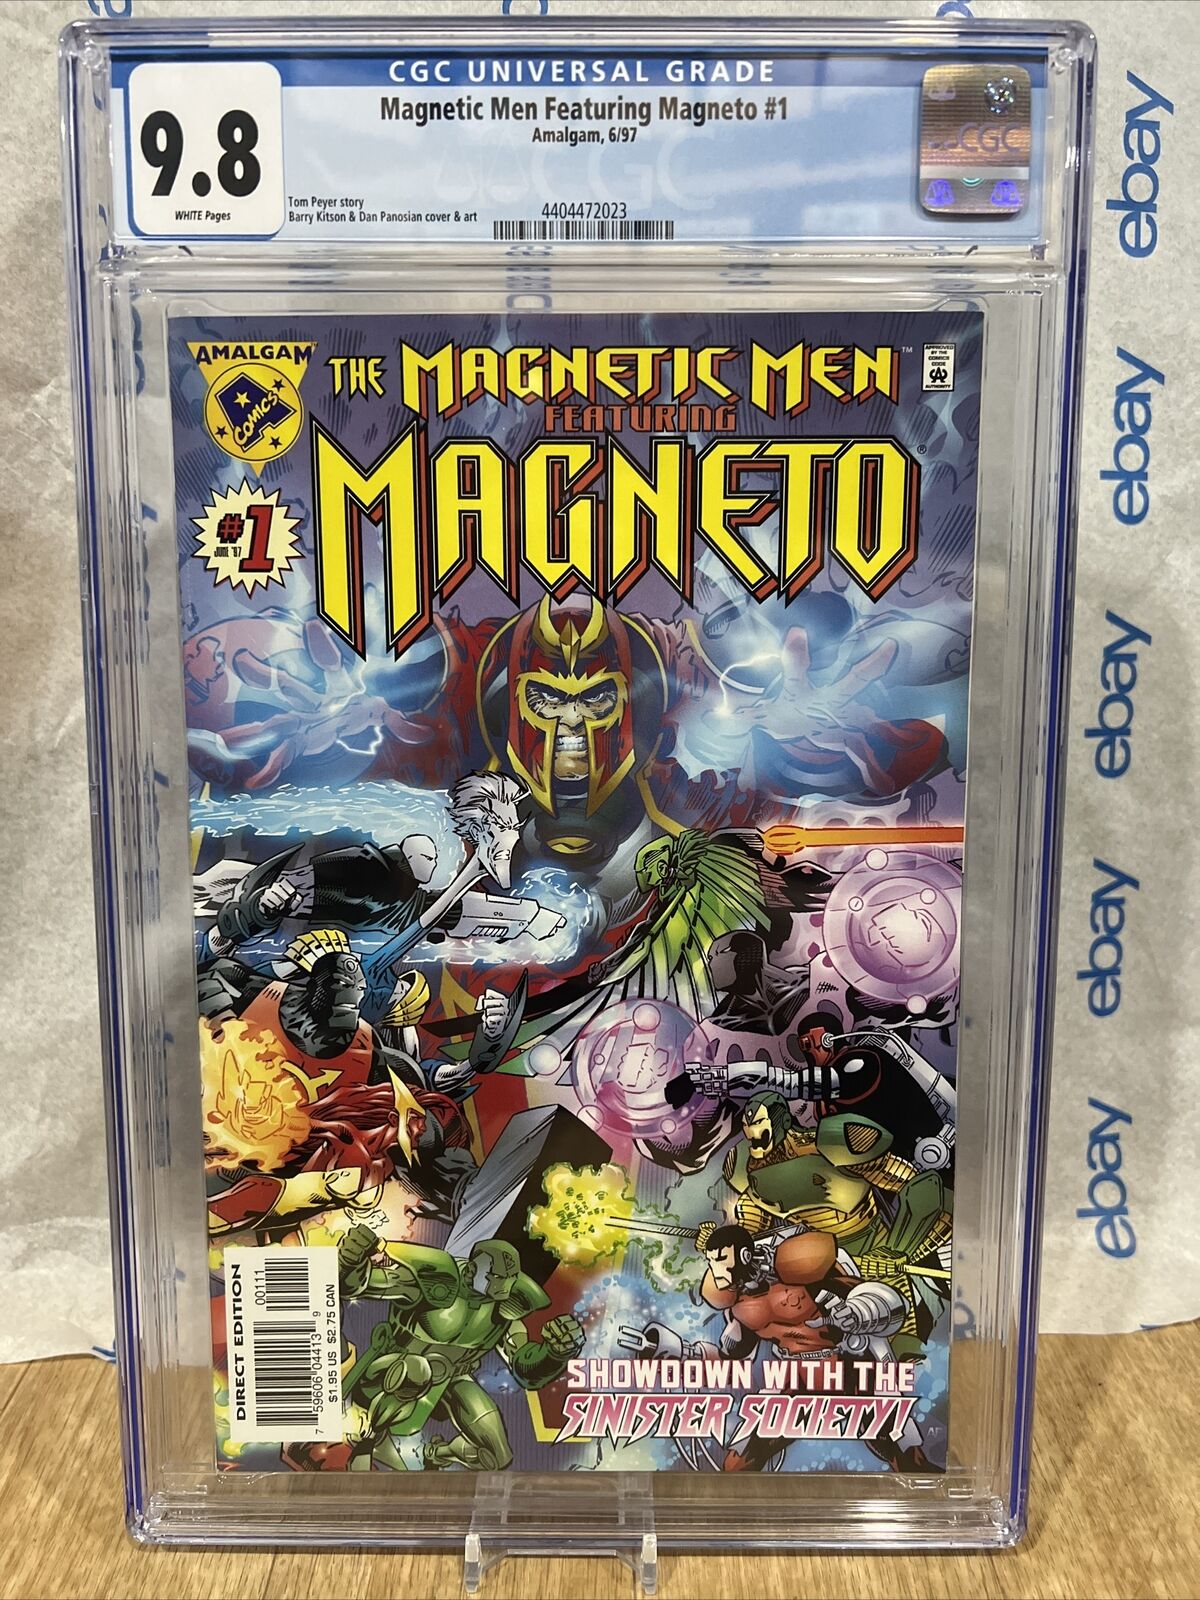 Magnetic Men f. Magneto #1 - Amalgam - CGC 9.8 NM/MT Comic 1997 Graded